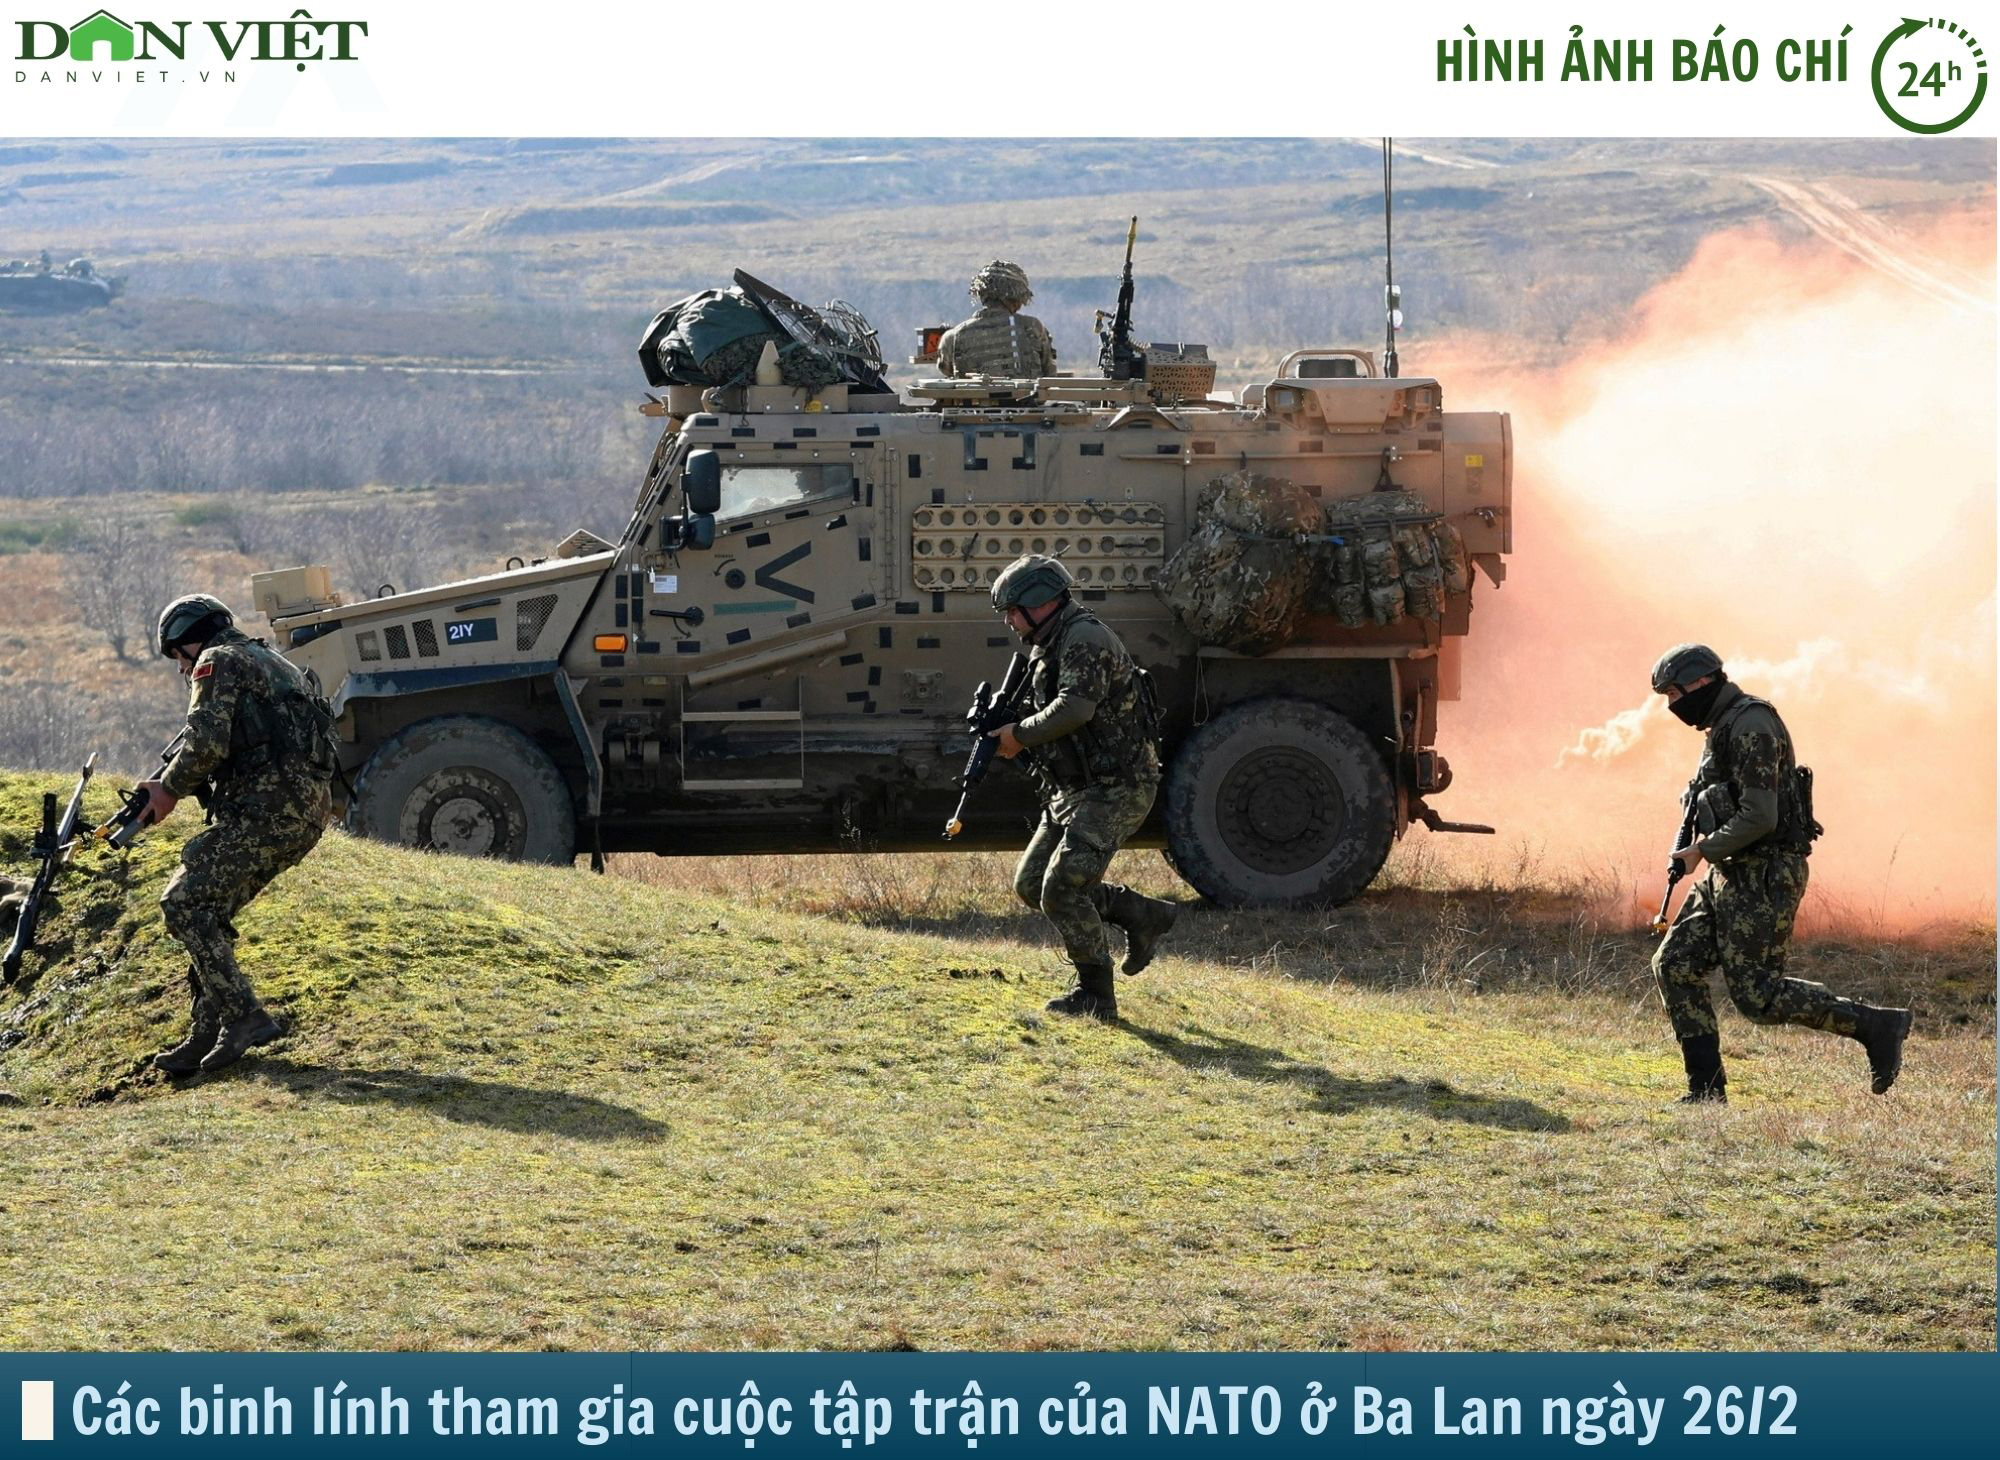 Hình ảnh báo chí 24h: Cuộc tập trận lớn nhất của NATO sau chiến tranh lạnh ở Ba Lan- Ảnh 1.